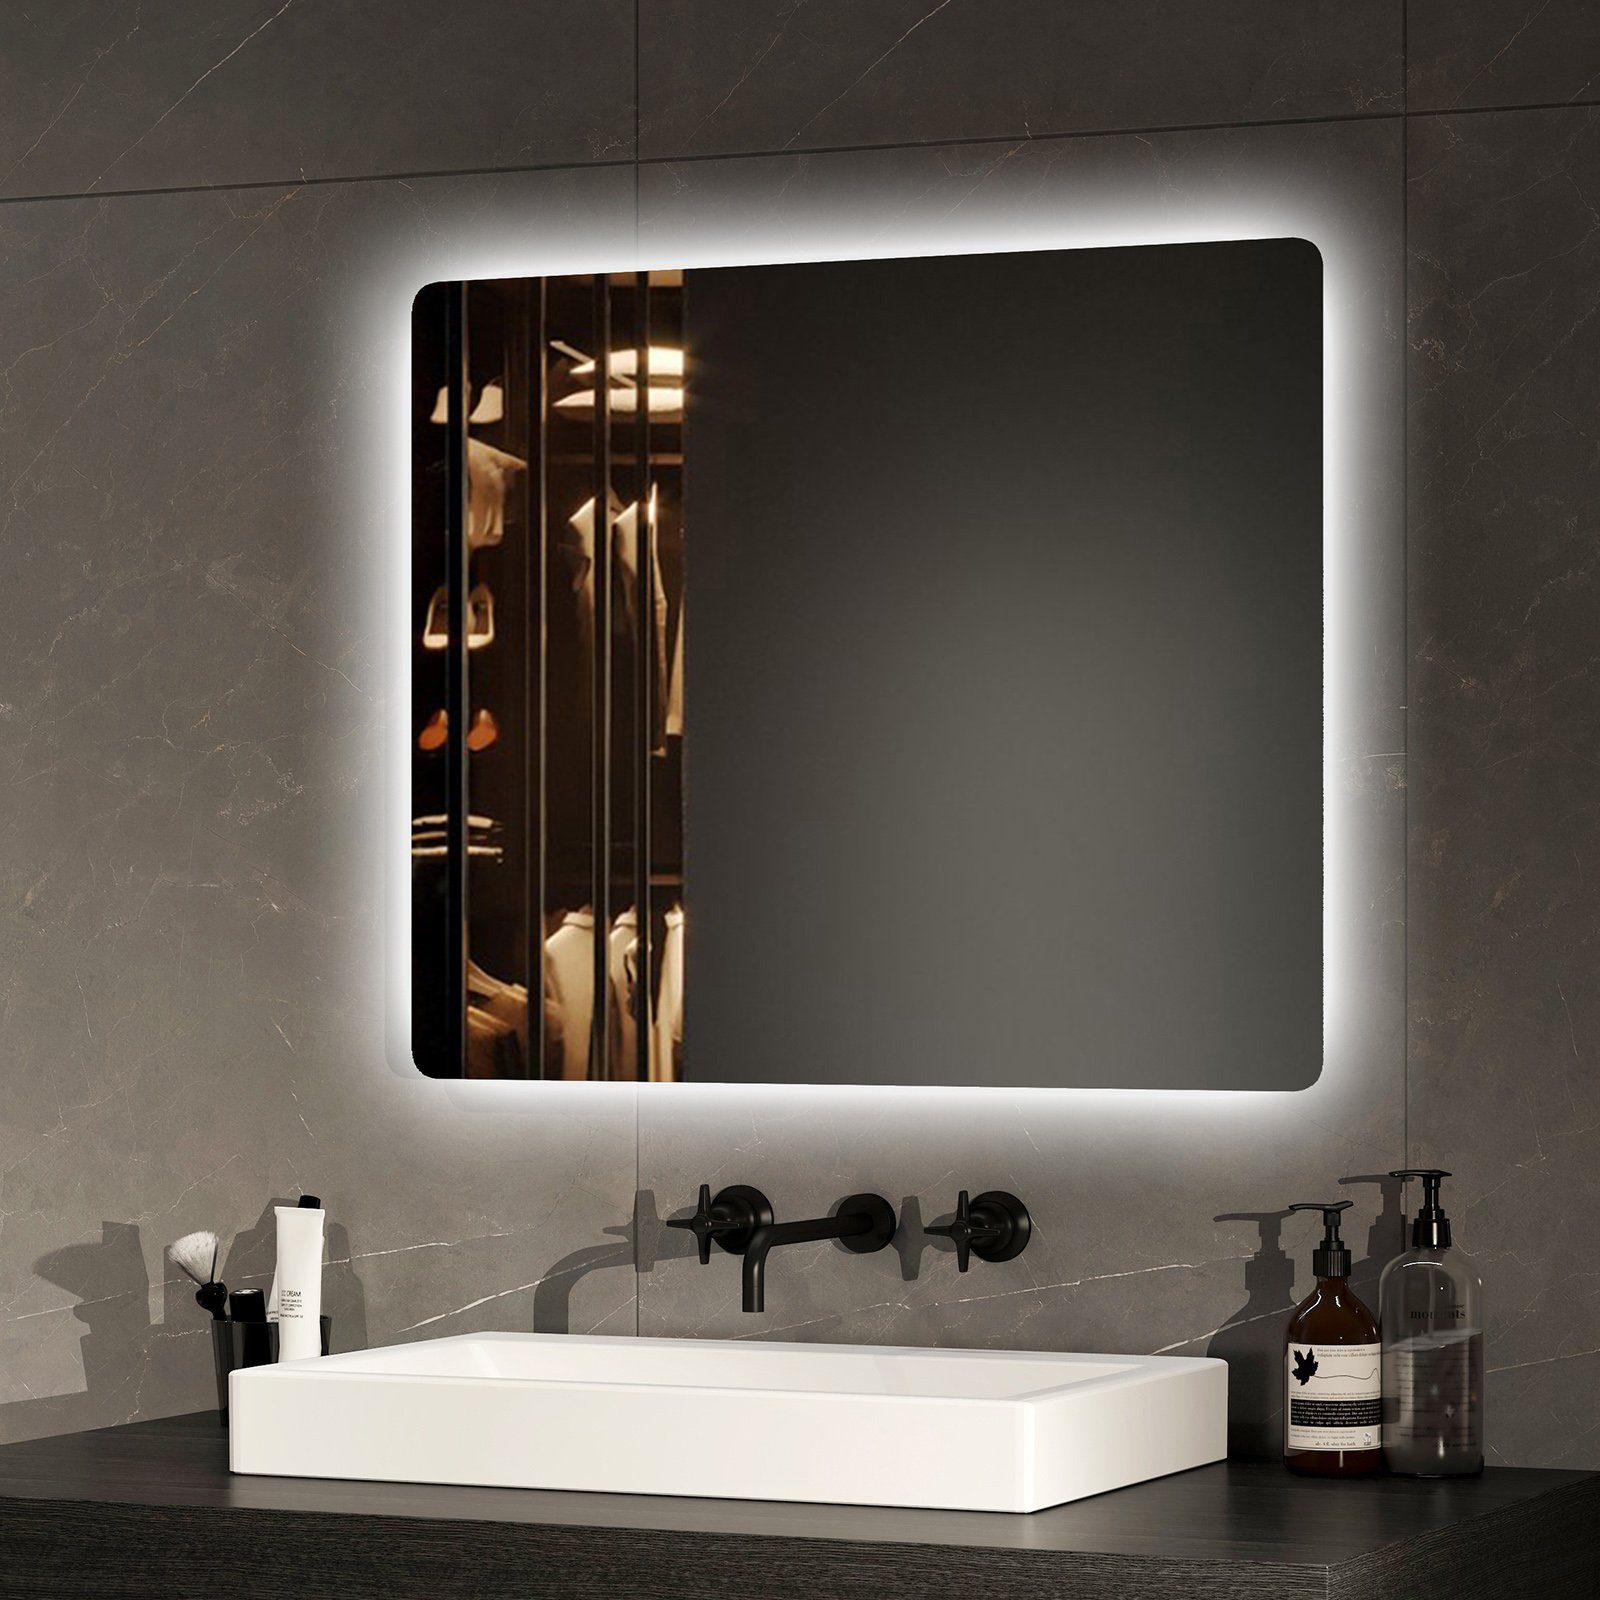 EMKE Badspiegel LED-Lichtspiegel Wandspiegel mit Beleuchtung und Beschlagfrei (Modell 09, ohne Rahmen, Höhe: 60cm), 2 Farben des Lichts, Druckknopfschalter,Energiesparend,60 x50 cm